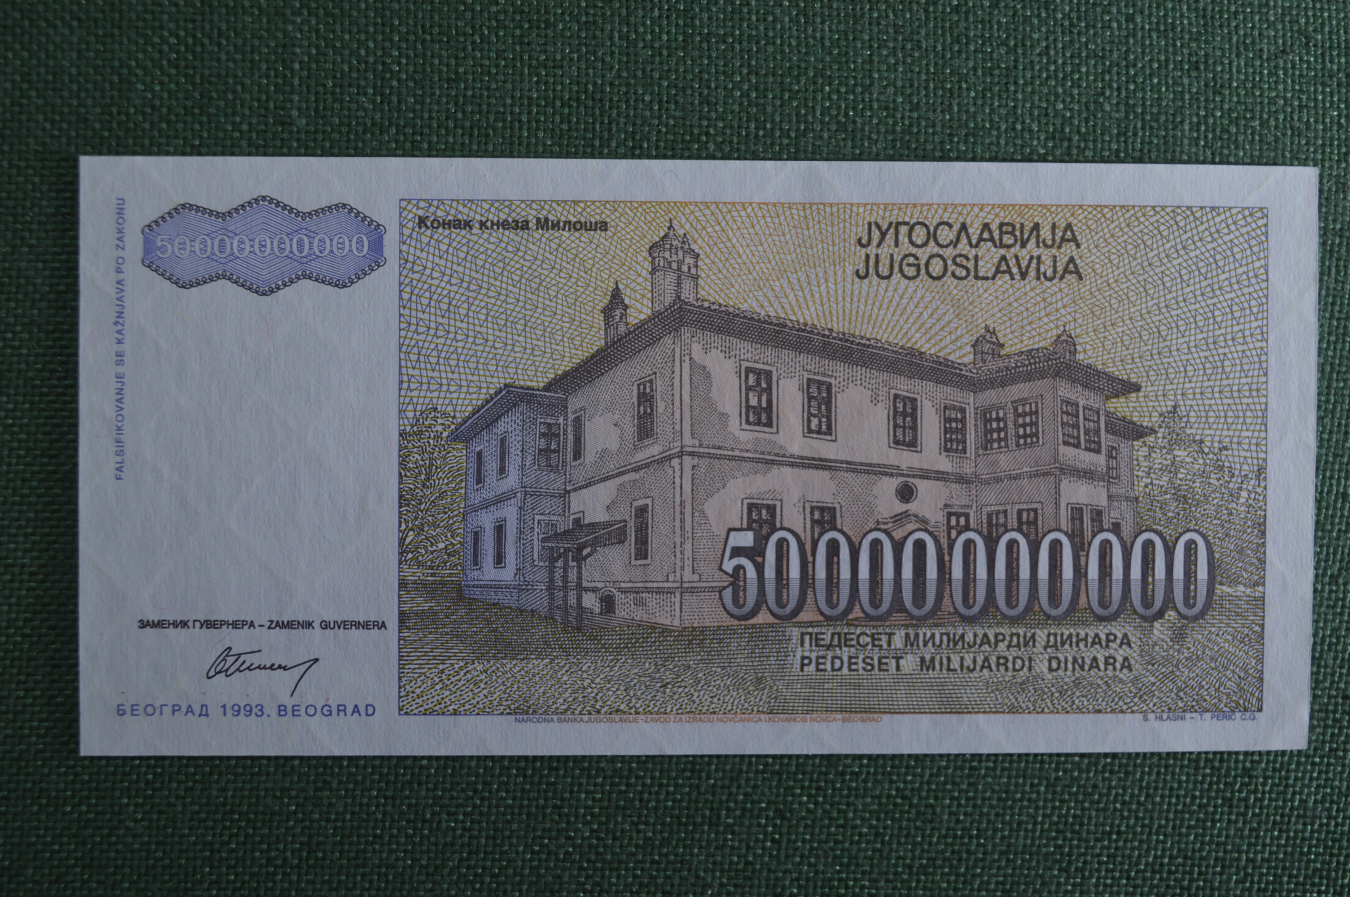 Купюра 1000000000. Купюра номиналом 50000000000. Югославия 5 млрд динаров.